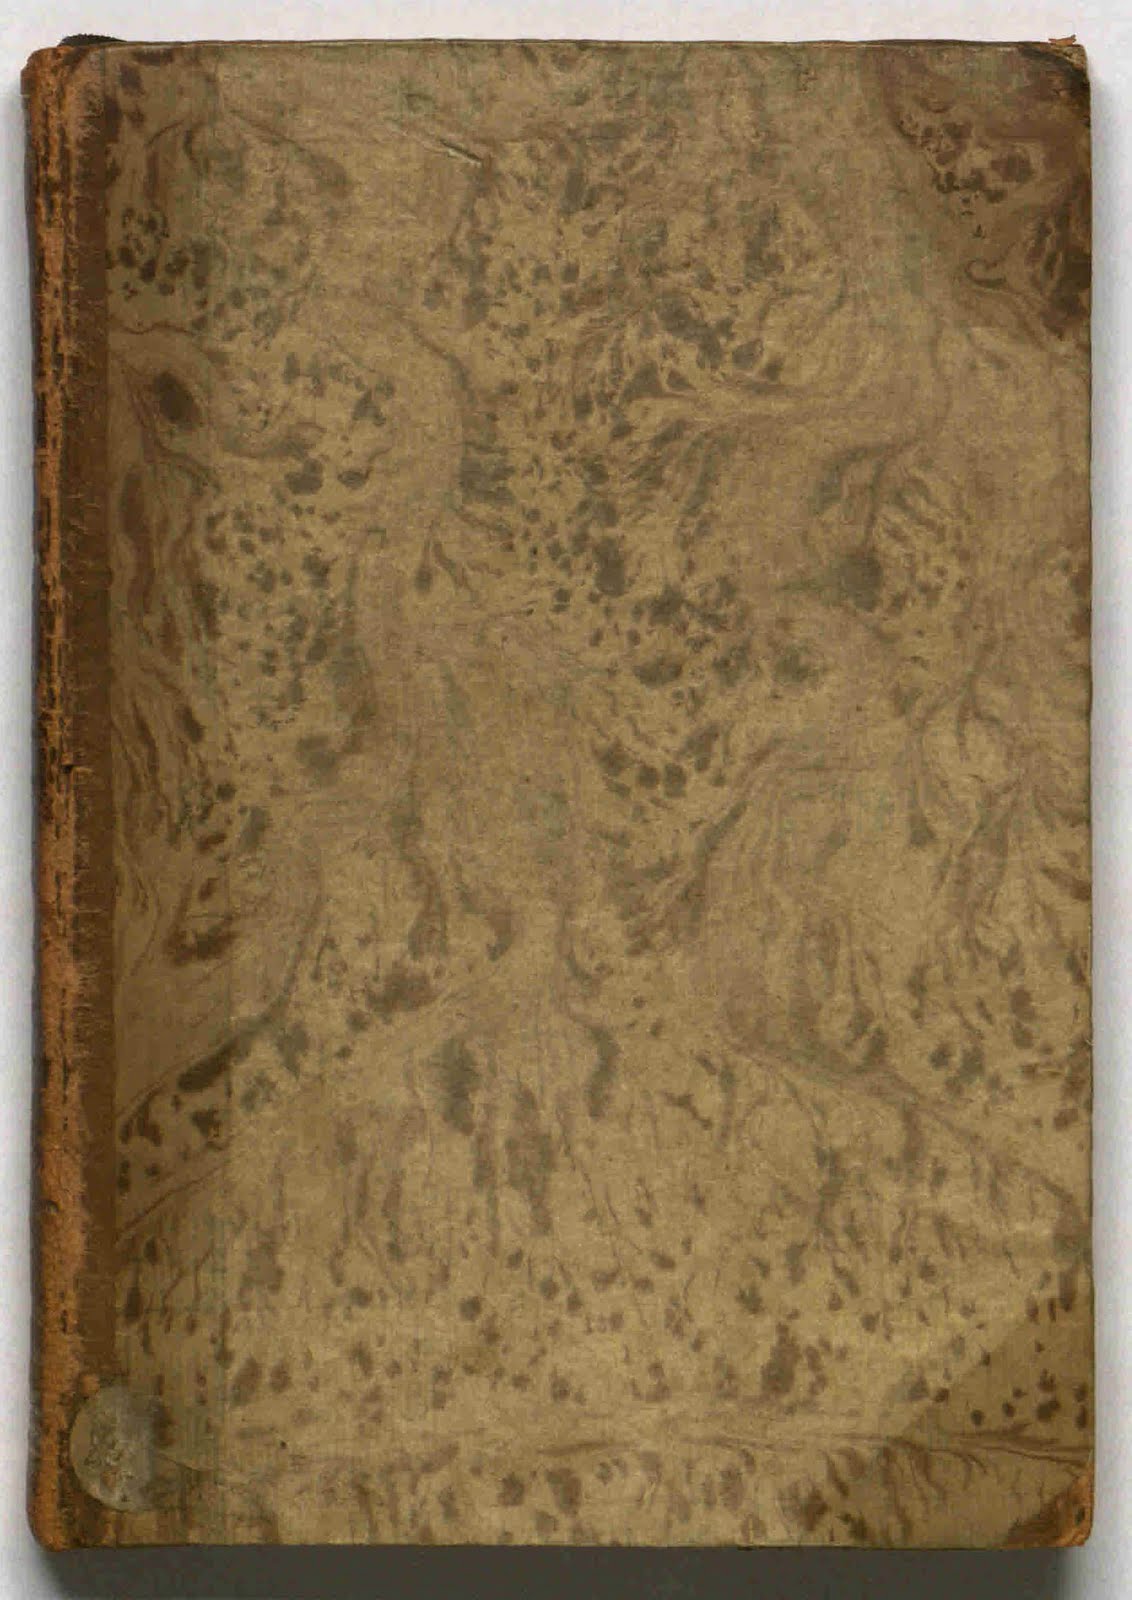 Cover of Pimander, sive De potestate et sapientia Dei translated by Marsilio Ficino (circa 1463)